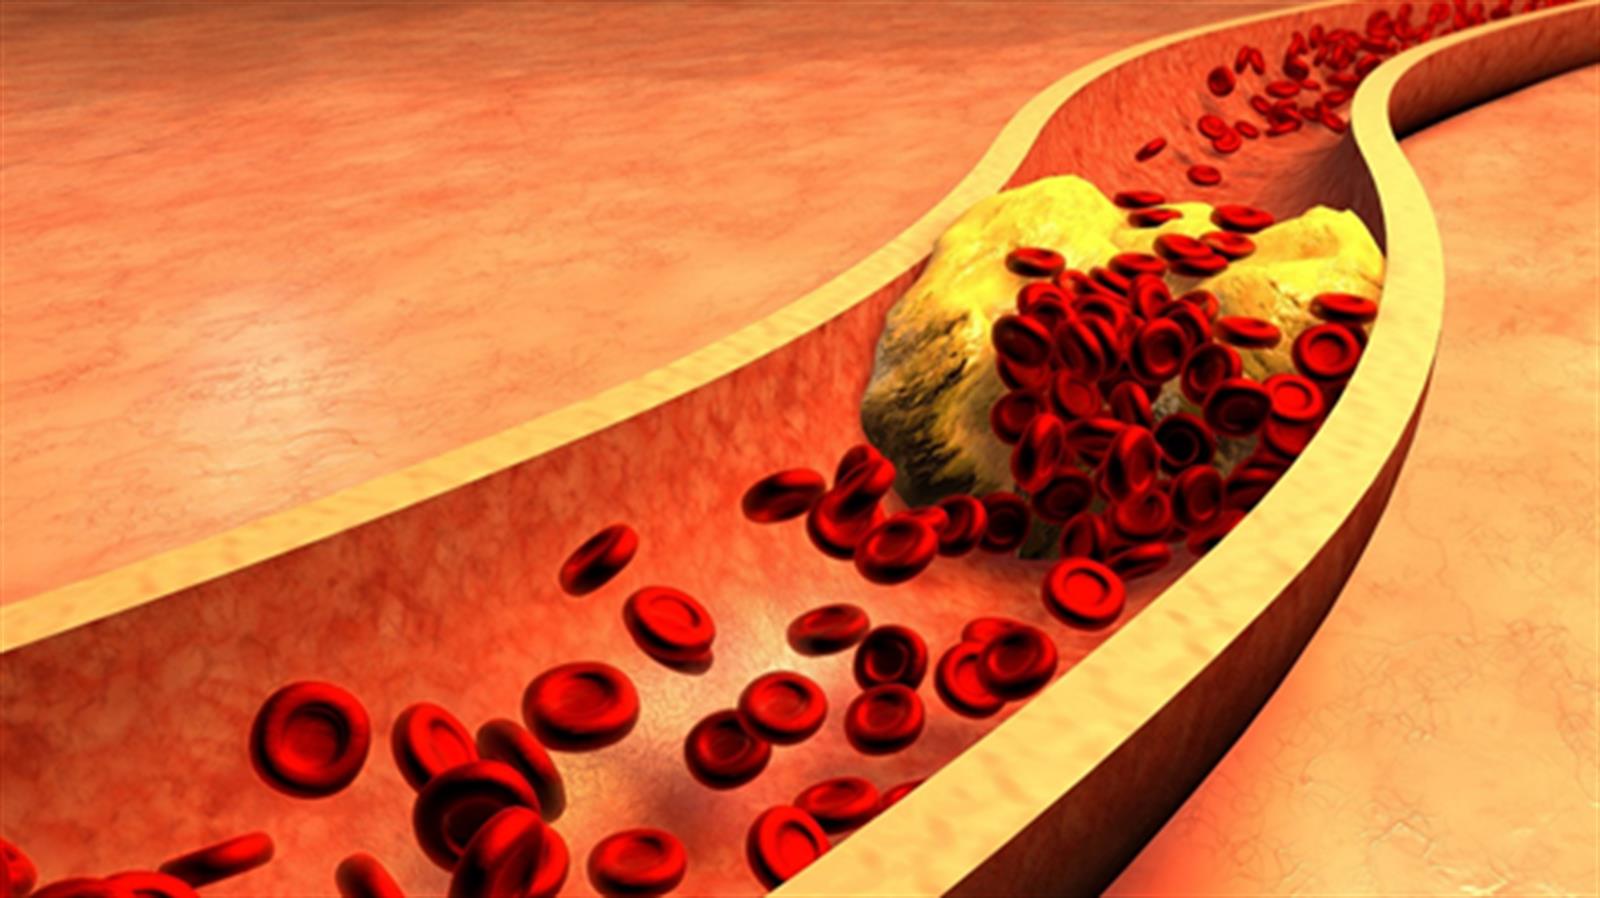 高膽固醇會嚴重損害你的心臟   10個控制膽固醇的簡單方法